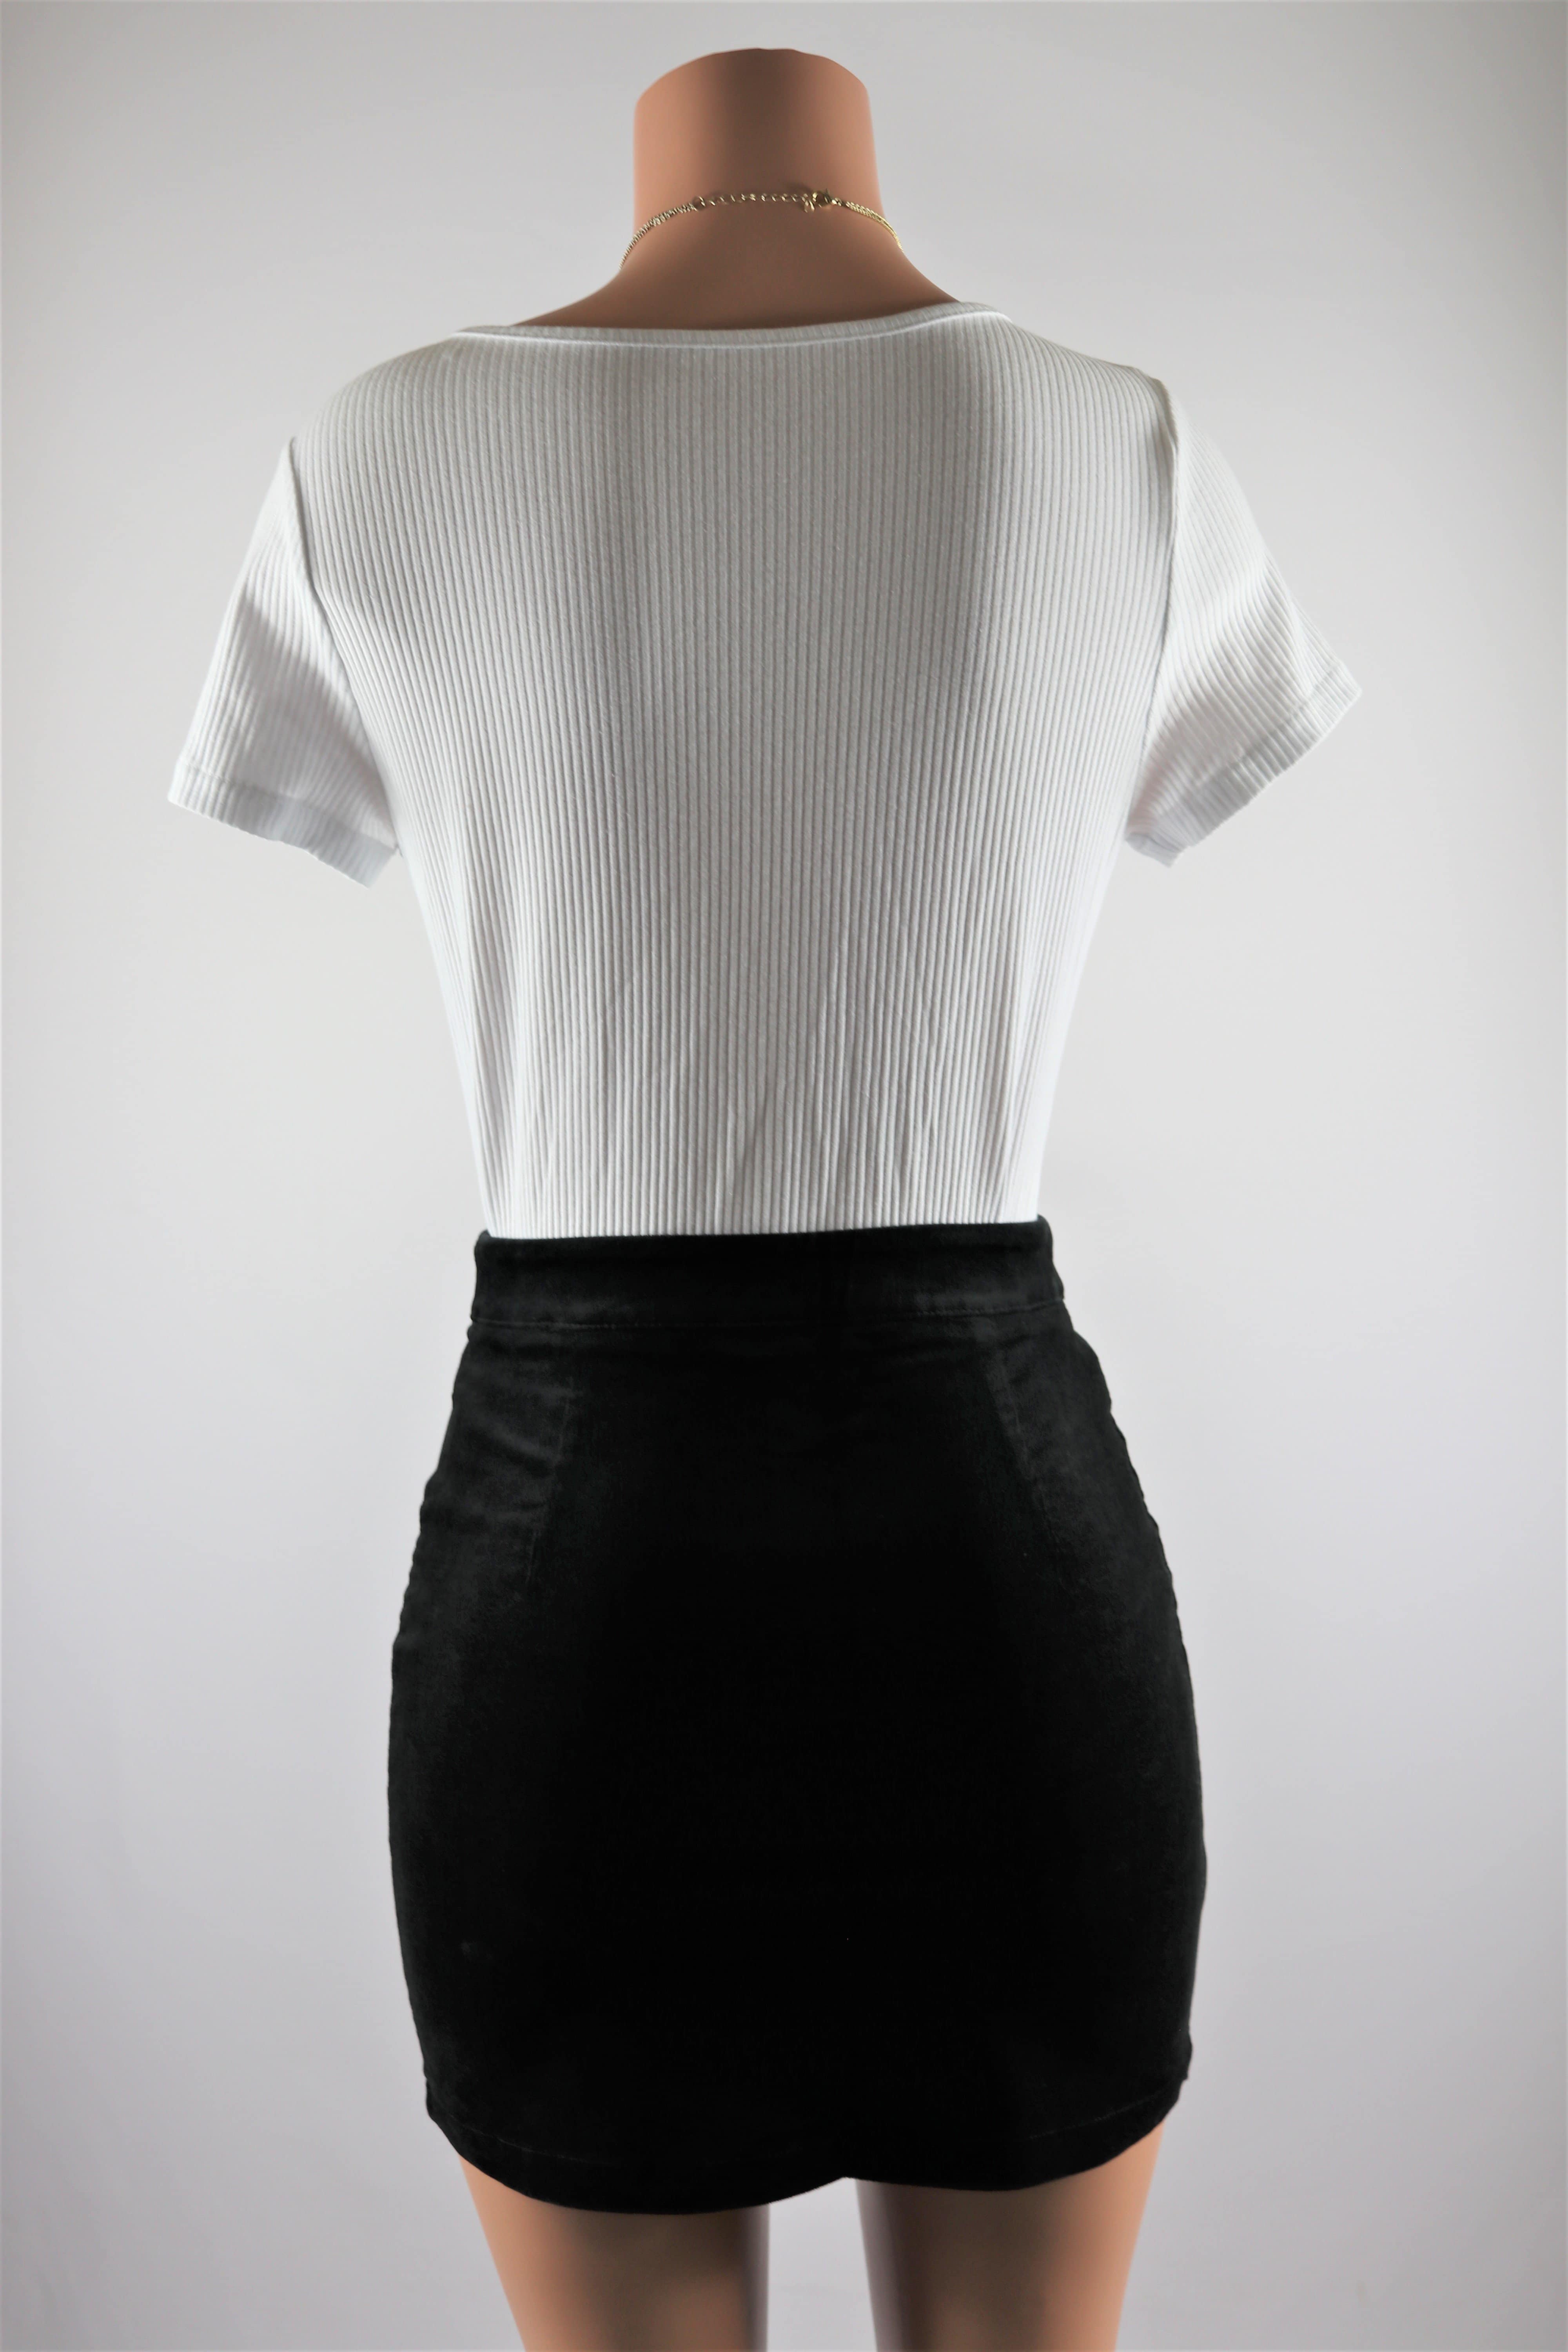 Promise Ring Skirt - High waisted corduroy black mini skirt front zipper.